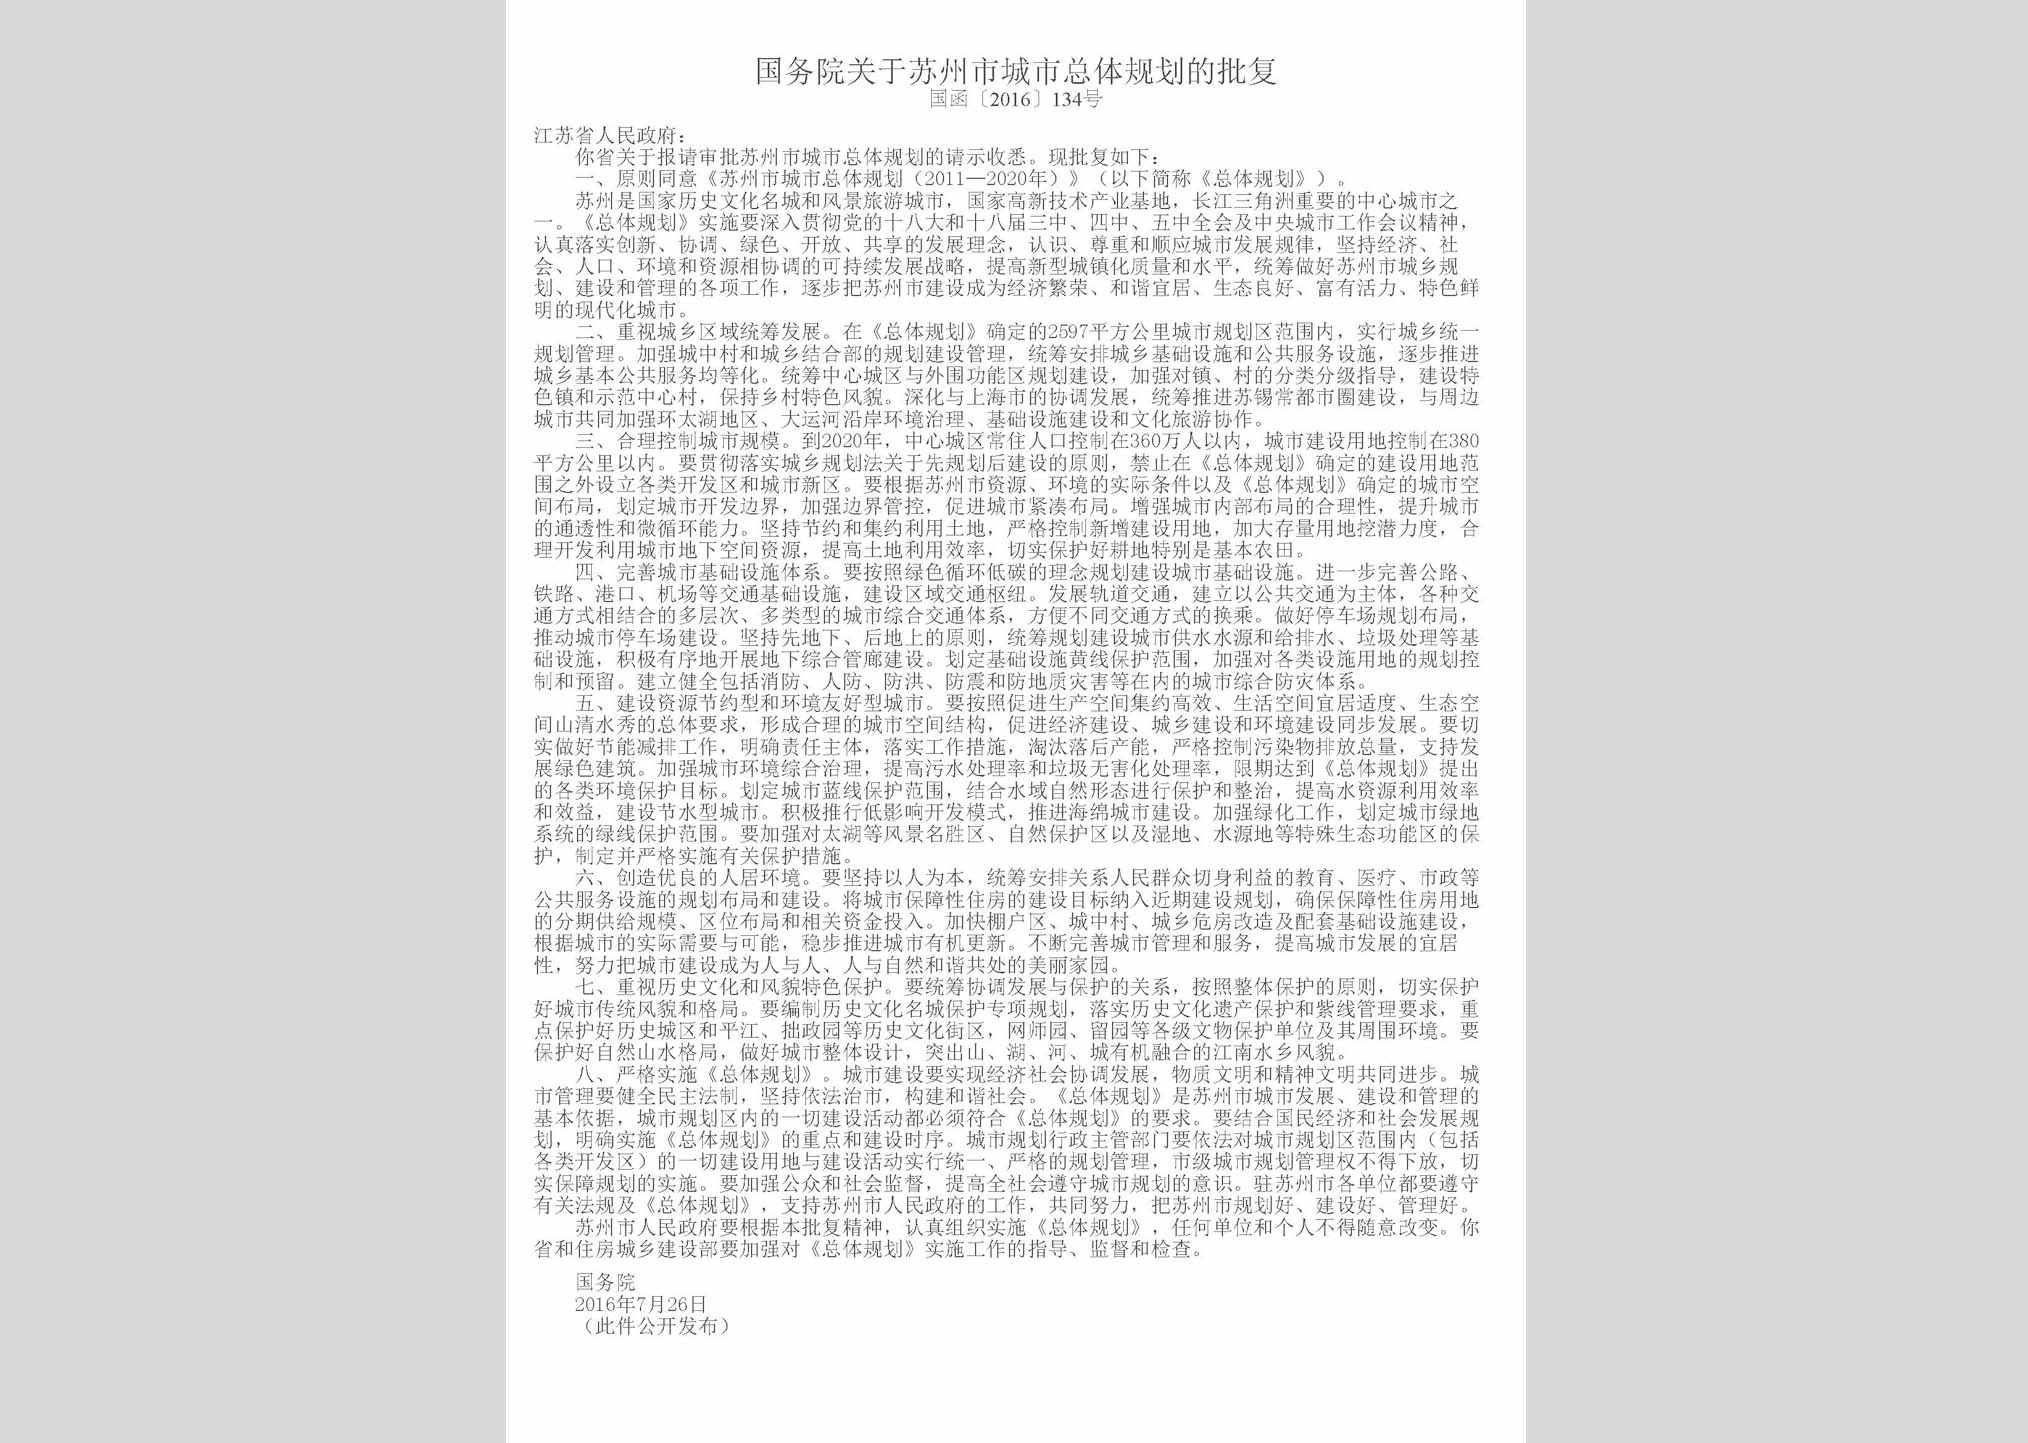 国函[2016]134号：国务院关于苏州市城市总体规划的批复